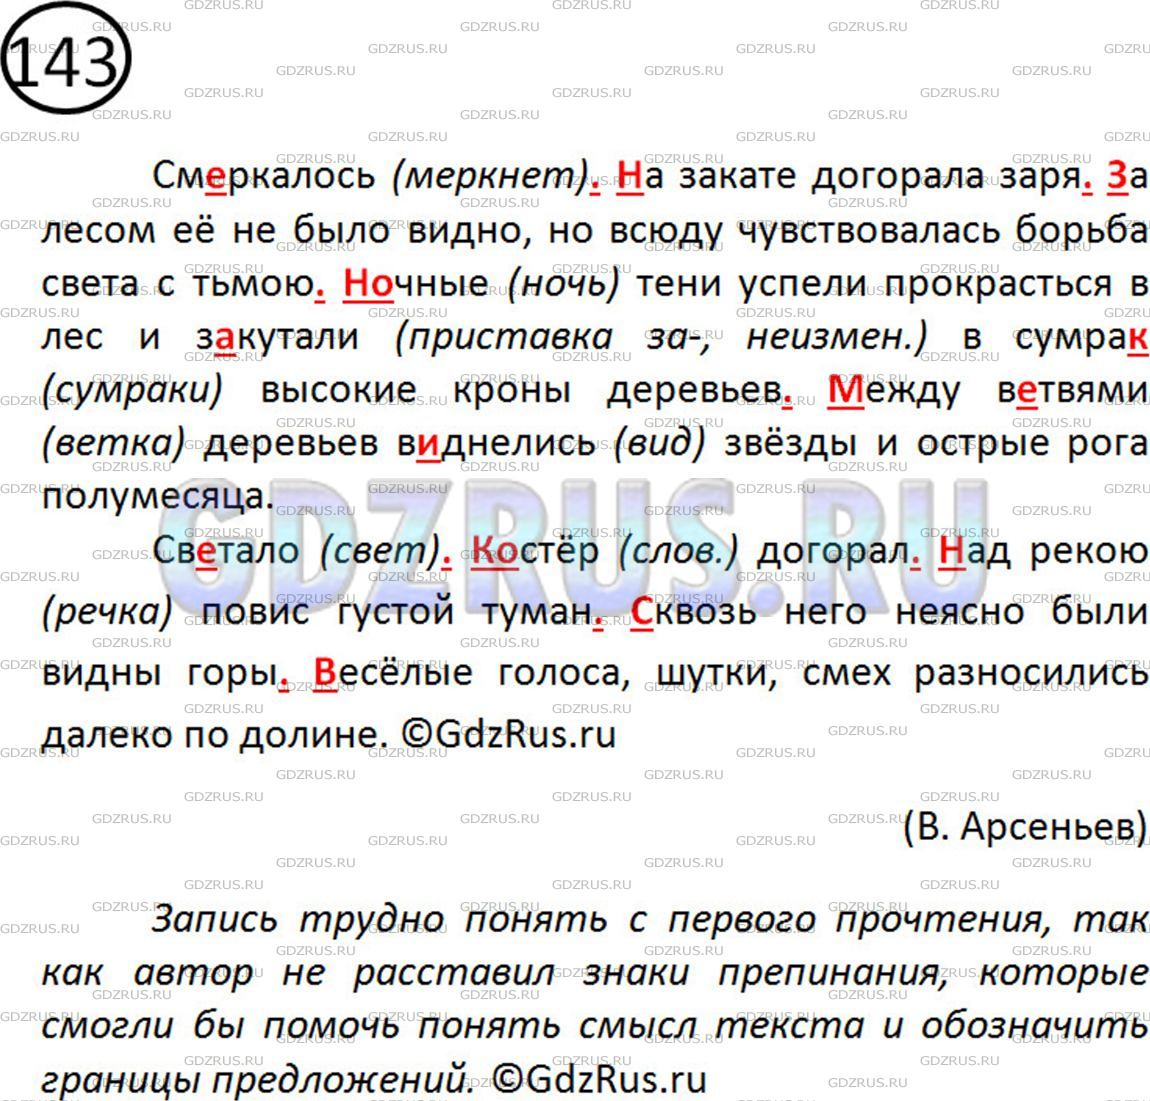 Фото решения 2: Номер №146 из ГДЗ по Русскому языку 5 класс: Ладыженская Т.А. 2019г.